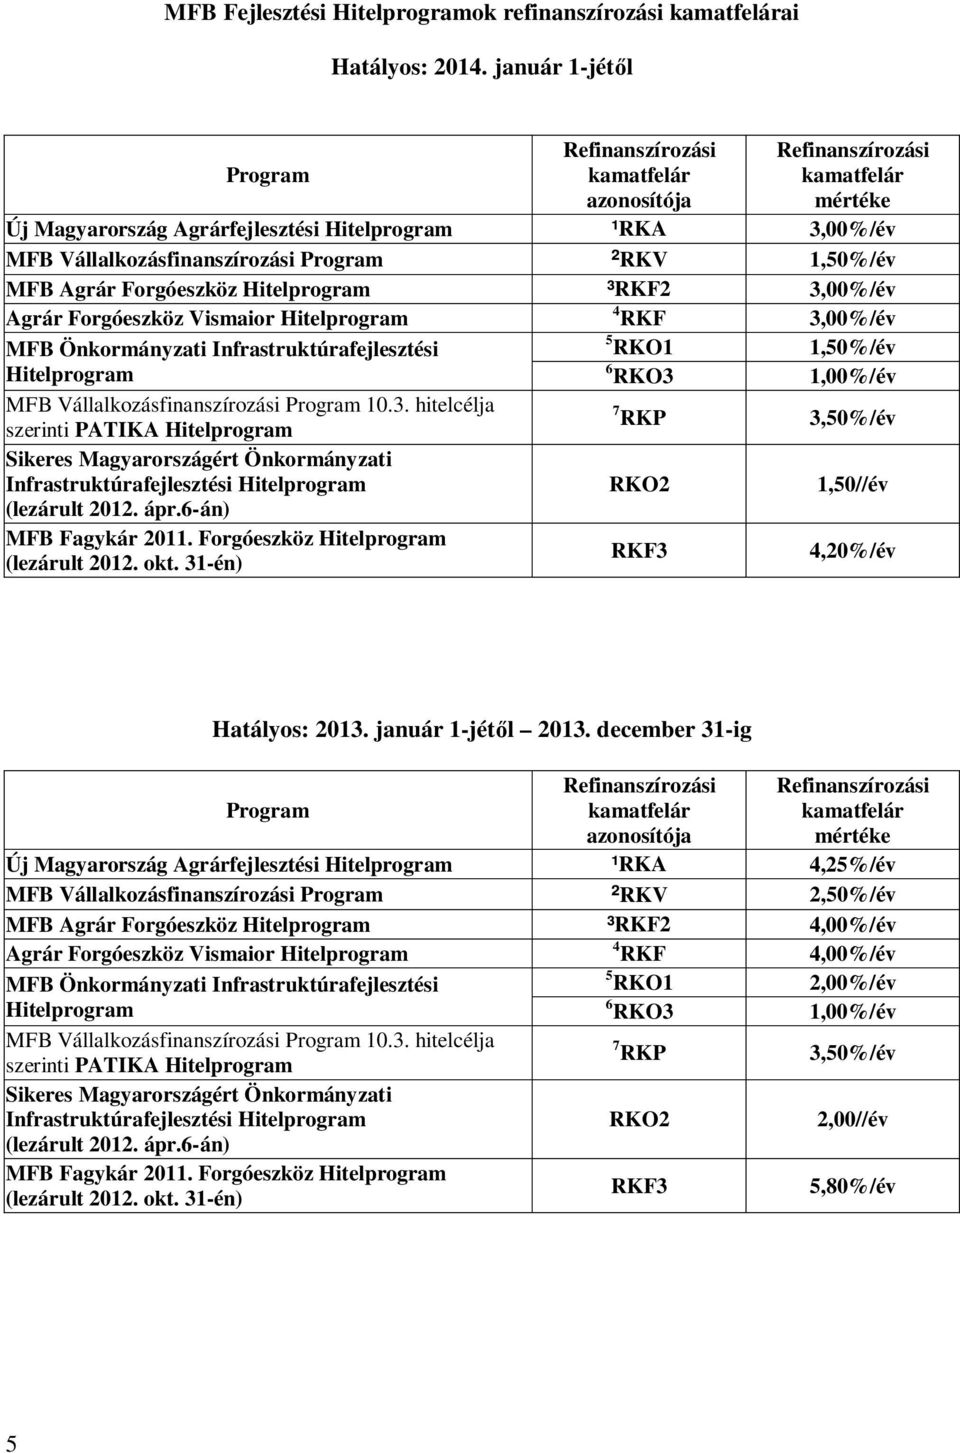 Önkormányzati Infrastruktúrafejlesztési 5 RKO1 1,50%/év 6 RKO3 1,00%/év MFB Vállalkozásfinanszírozási 10.3. hitelcélja szerinti PATIKA 7 RKP 3,50%/év Sikeres Magyarországért Önkormányzati Infrastruktúrafejlesztési RKO2 1,50//év (lezárult 2012.